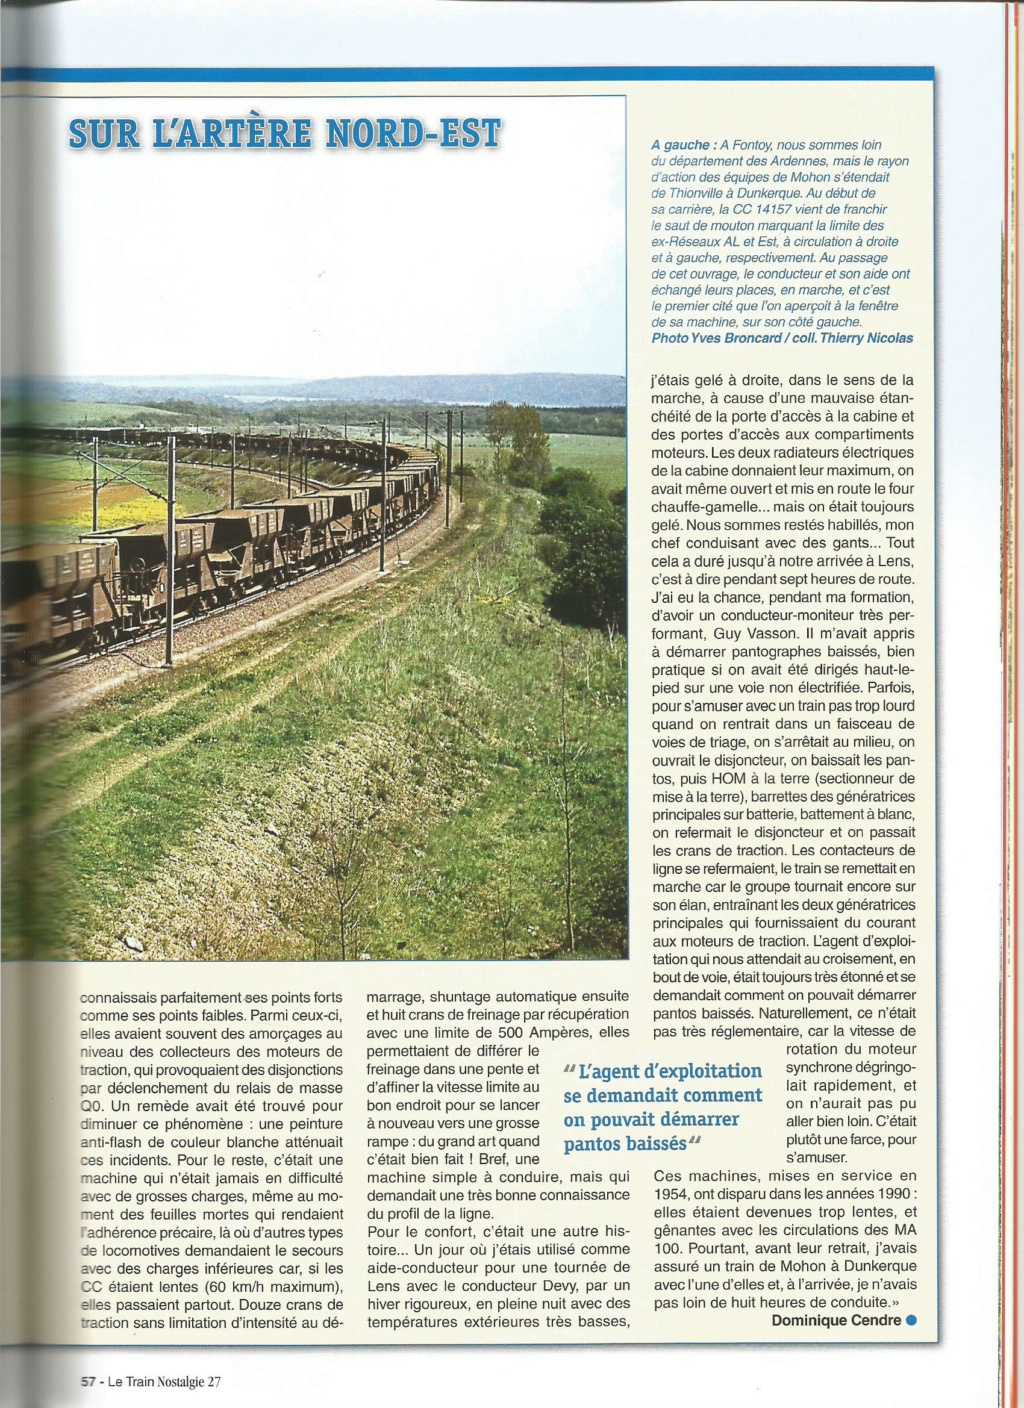 Le train nostalgie  - Page 5 810